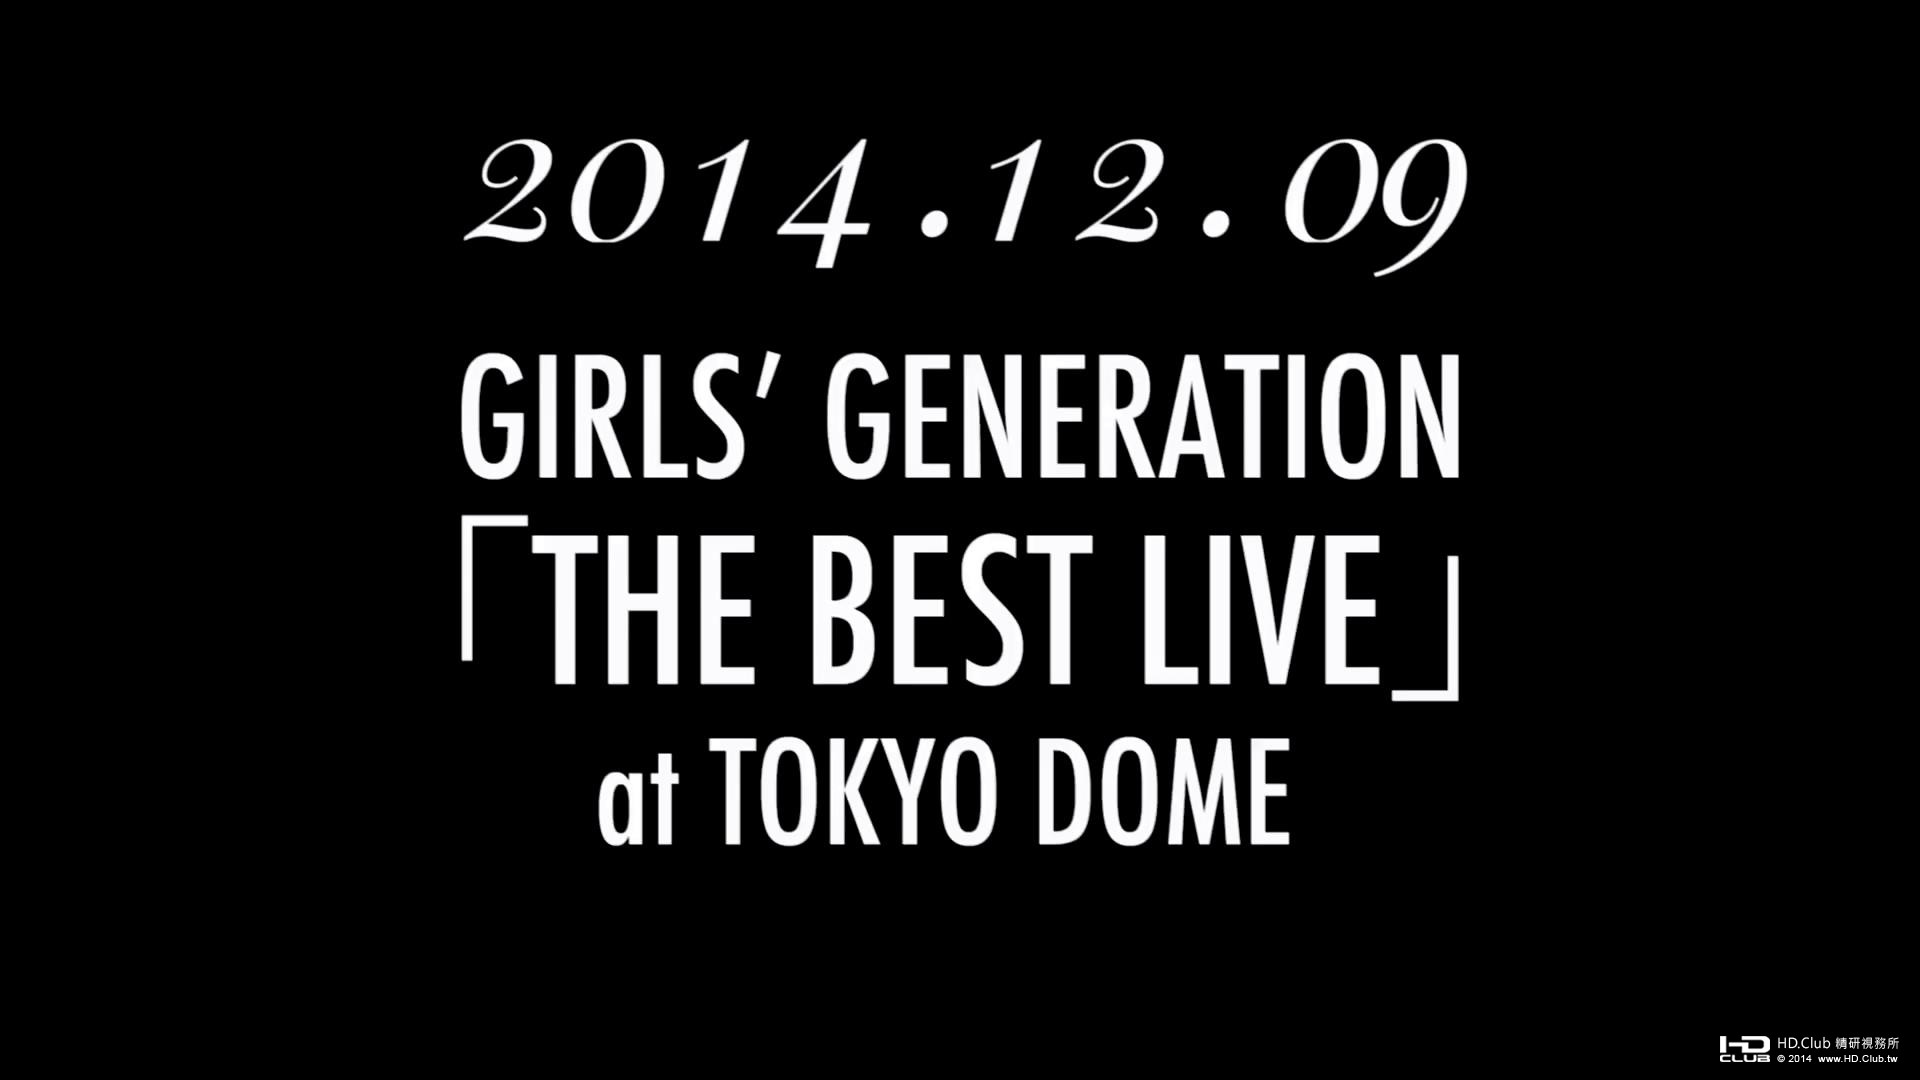 少女時代 「THE BEST LIVE」 at TOKYO DOME2.jpg